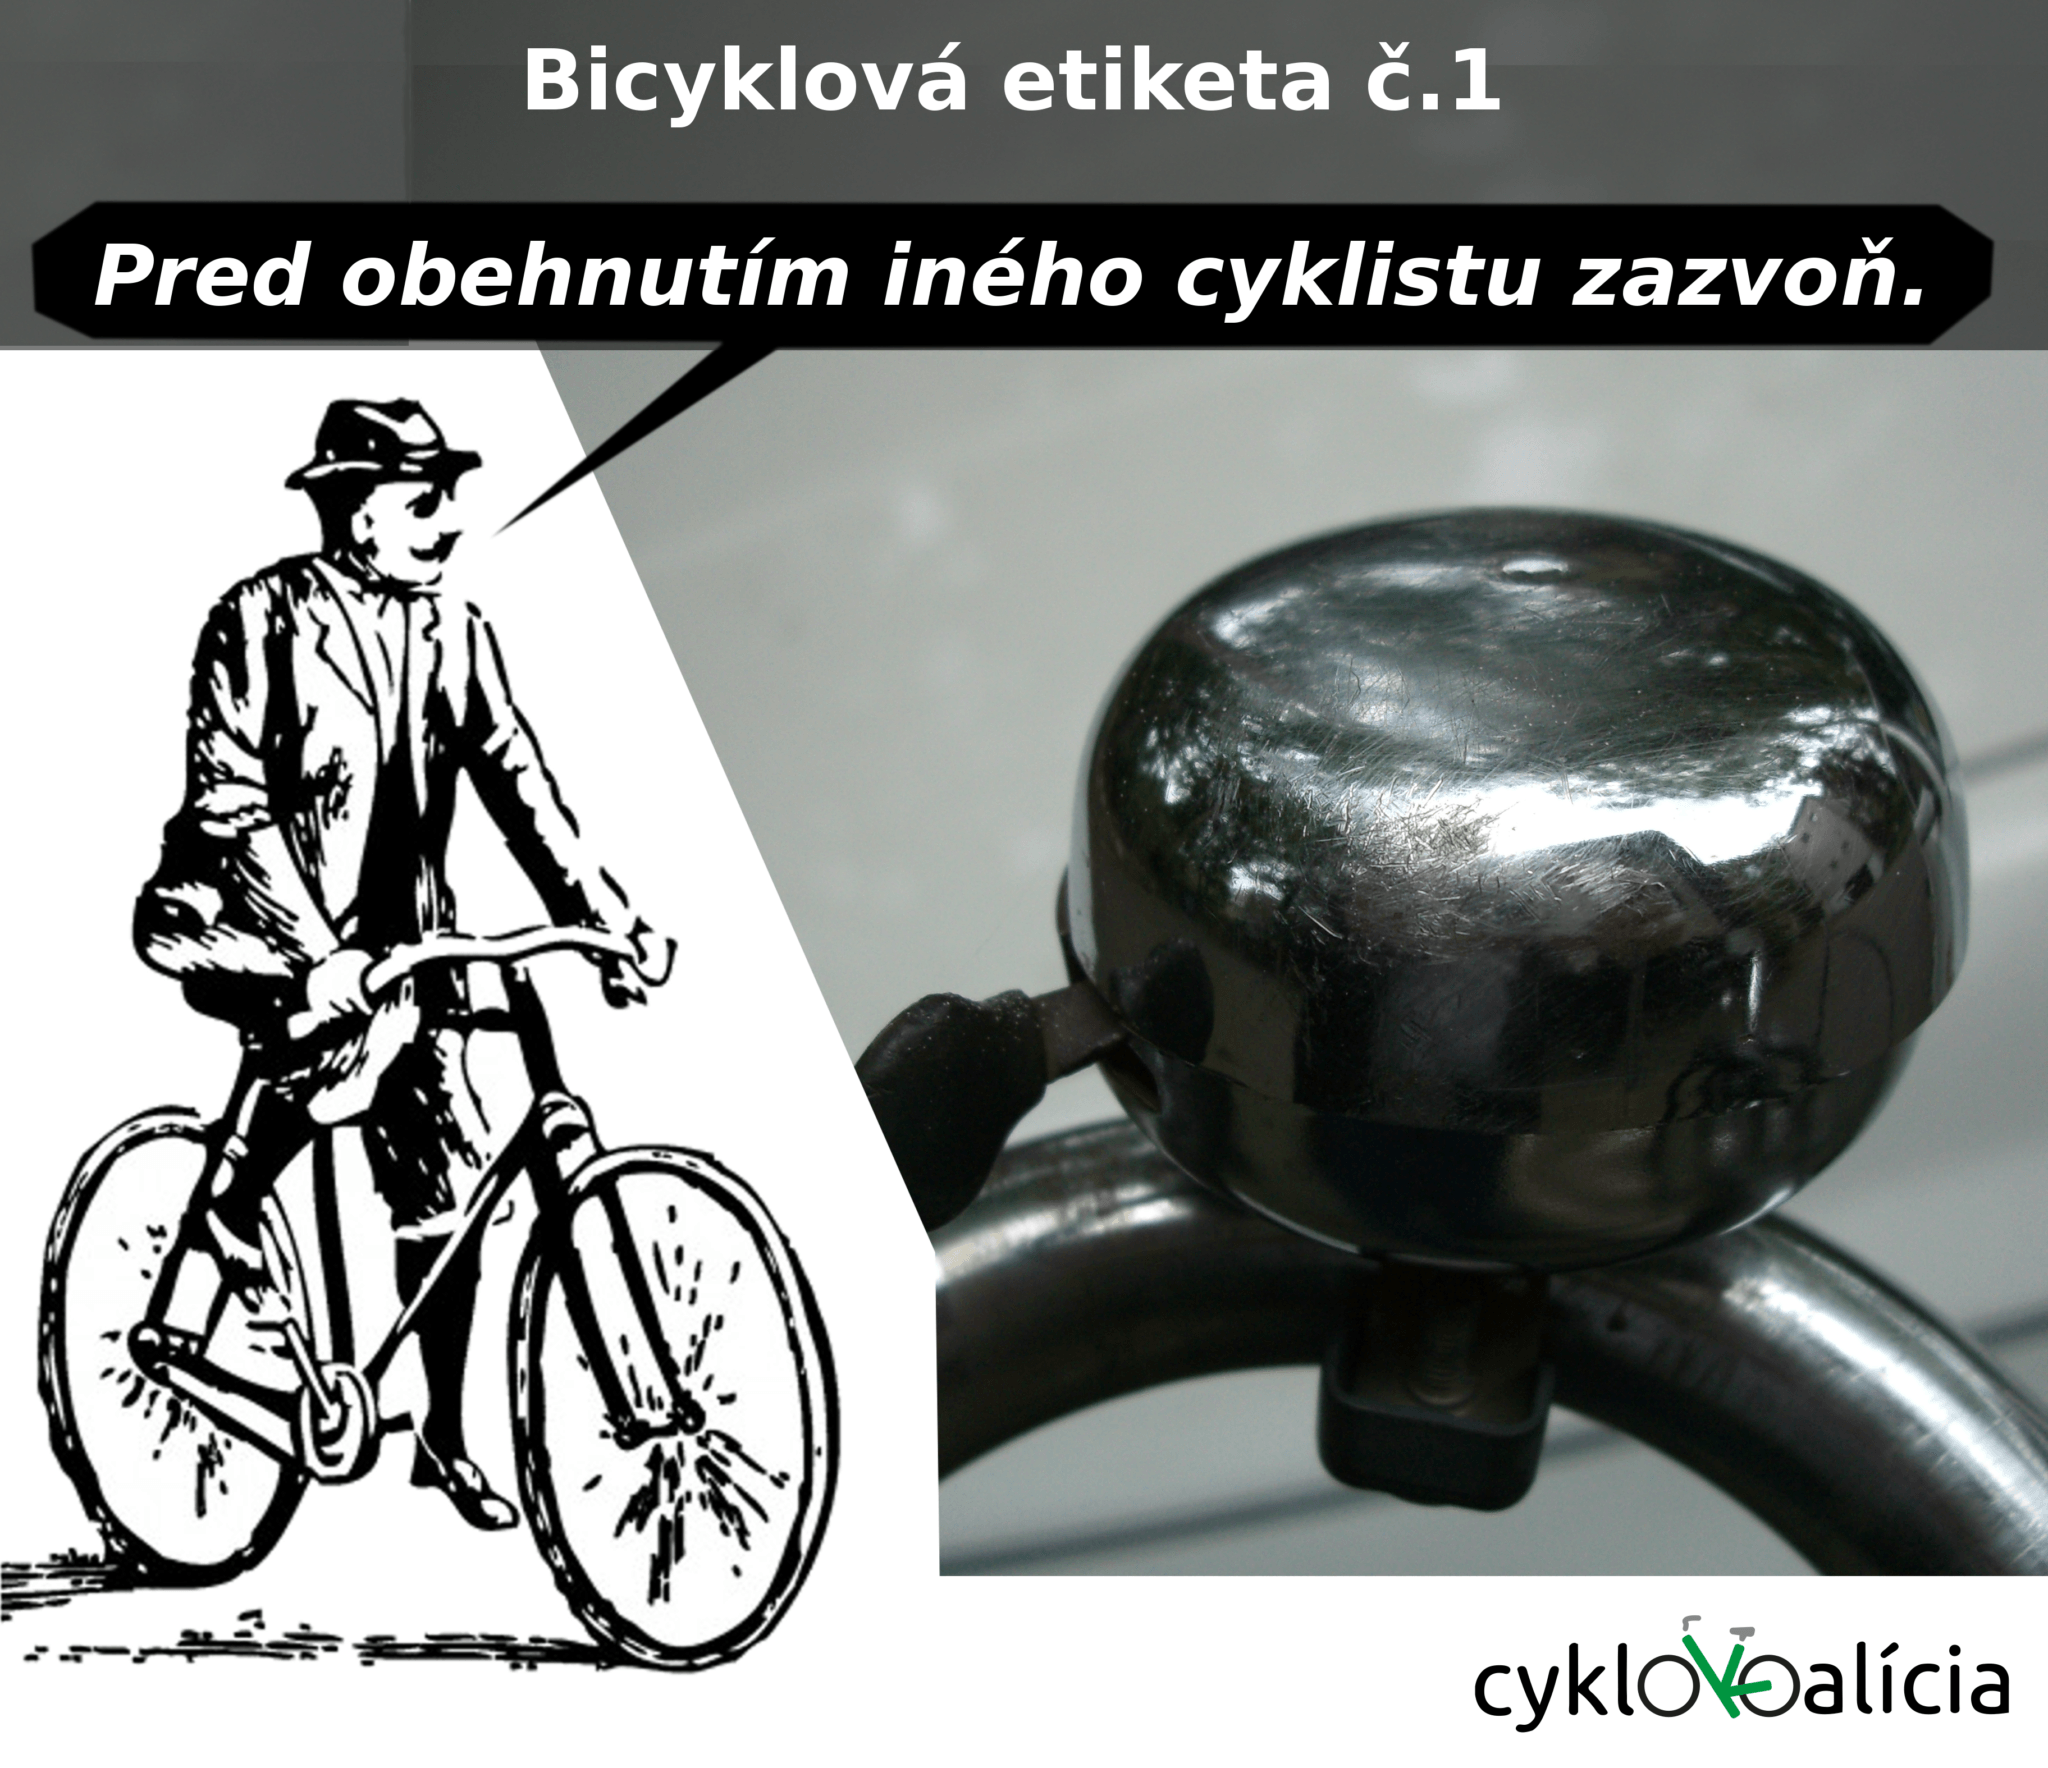 Bicyklová etiketa č.1: Zvonček